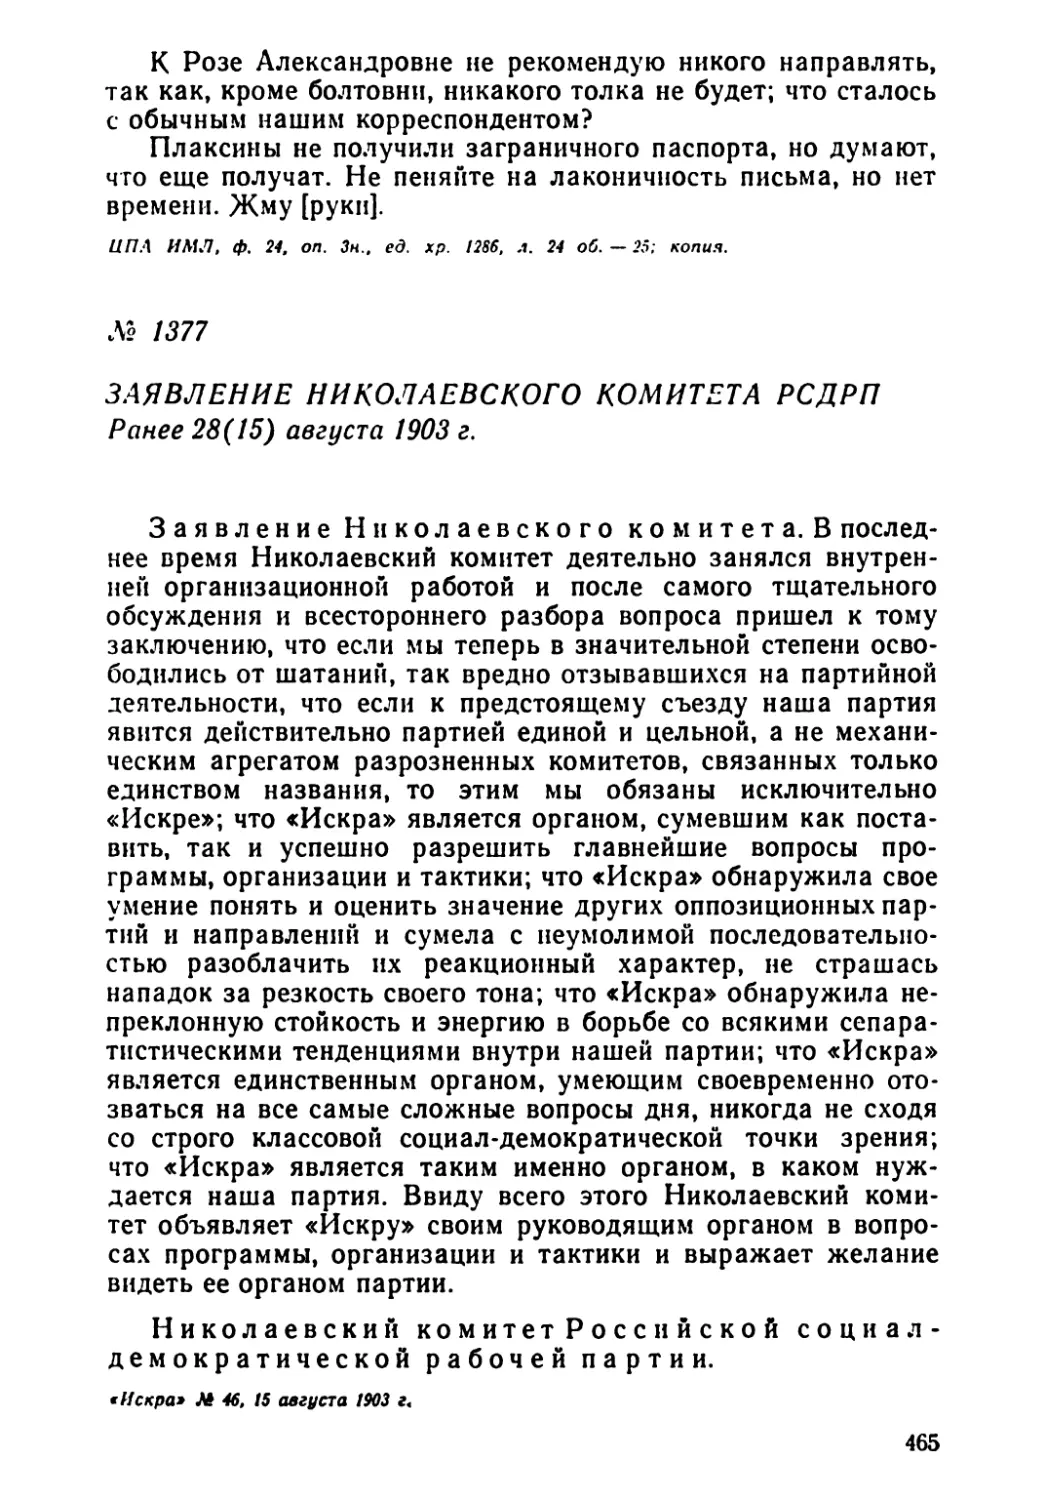 № 1377 Заявление Николаевского комитета РСДРП. Ранее 28 августа